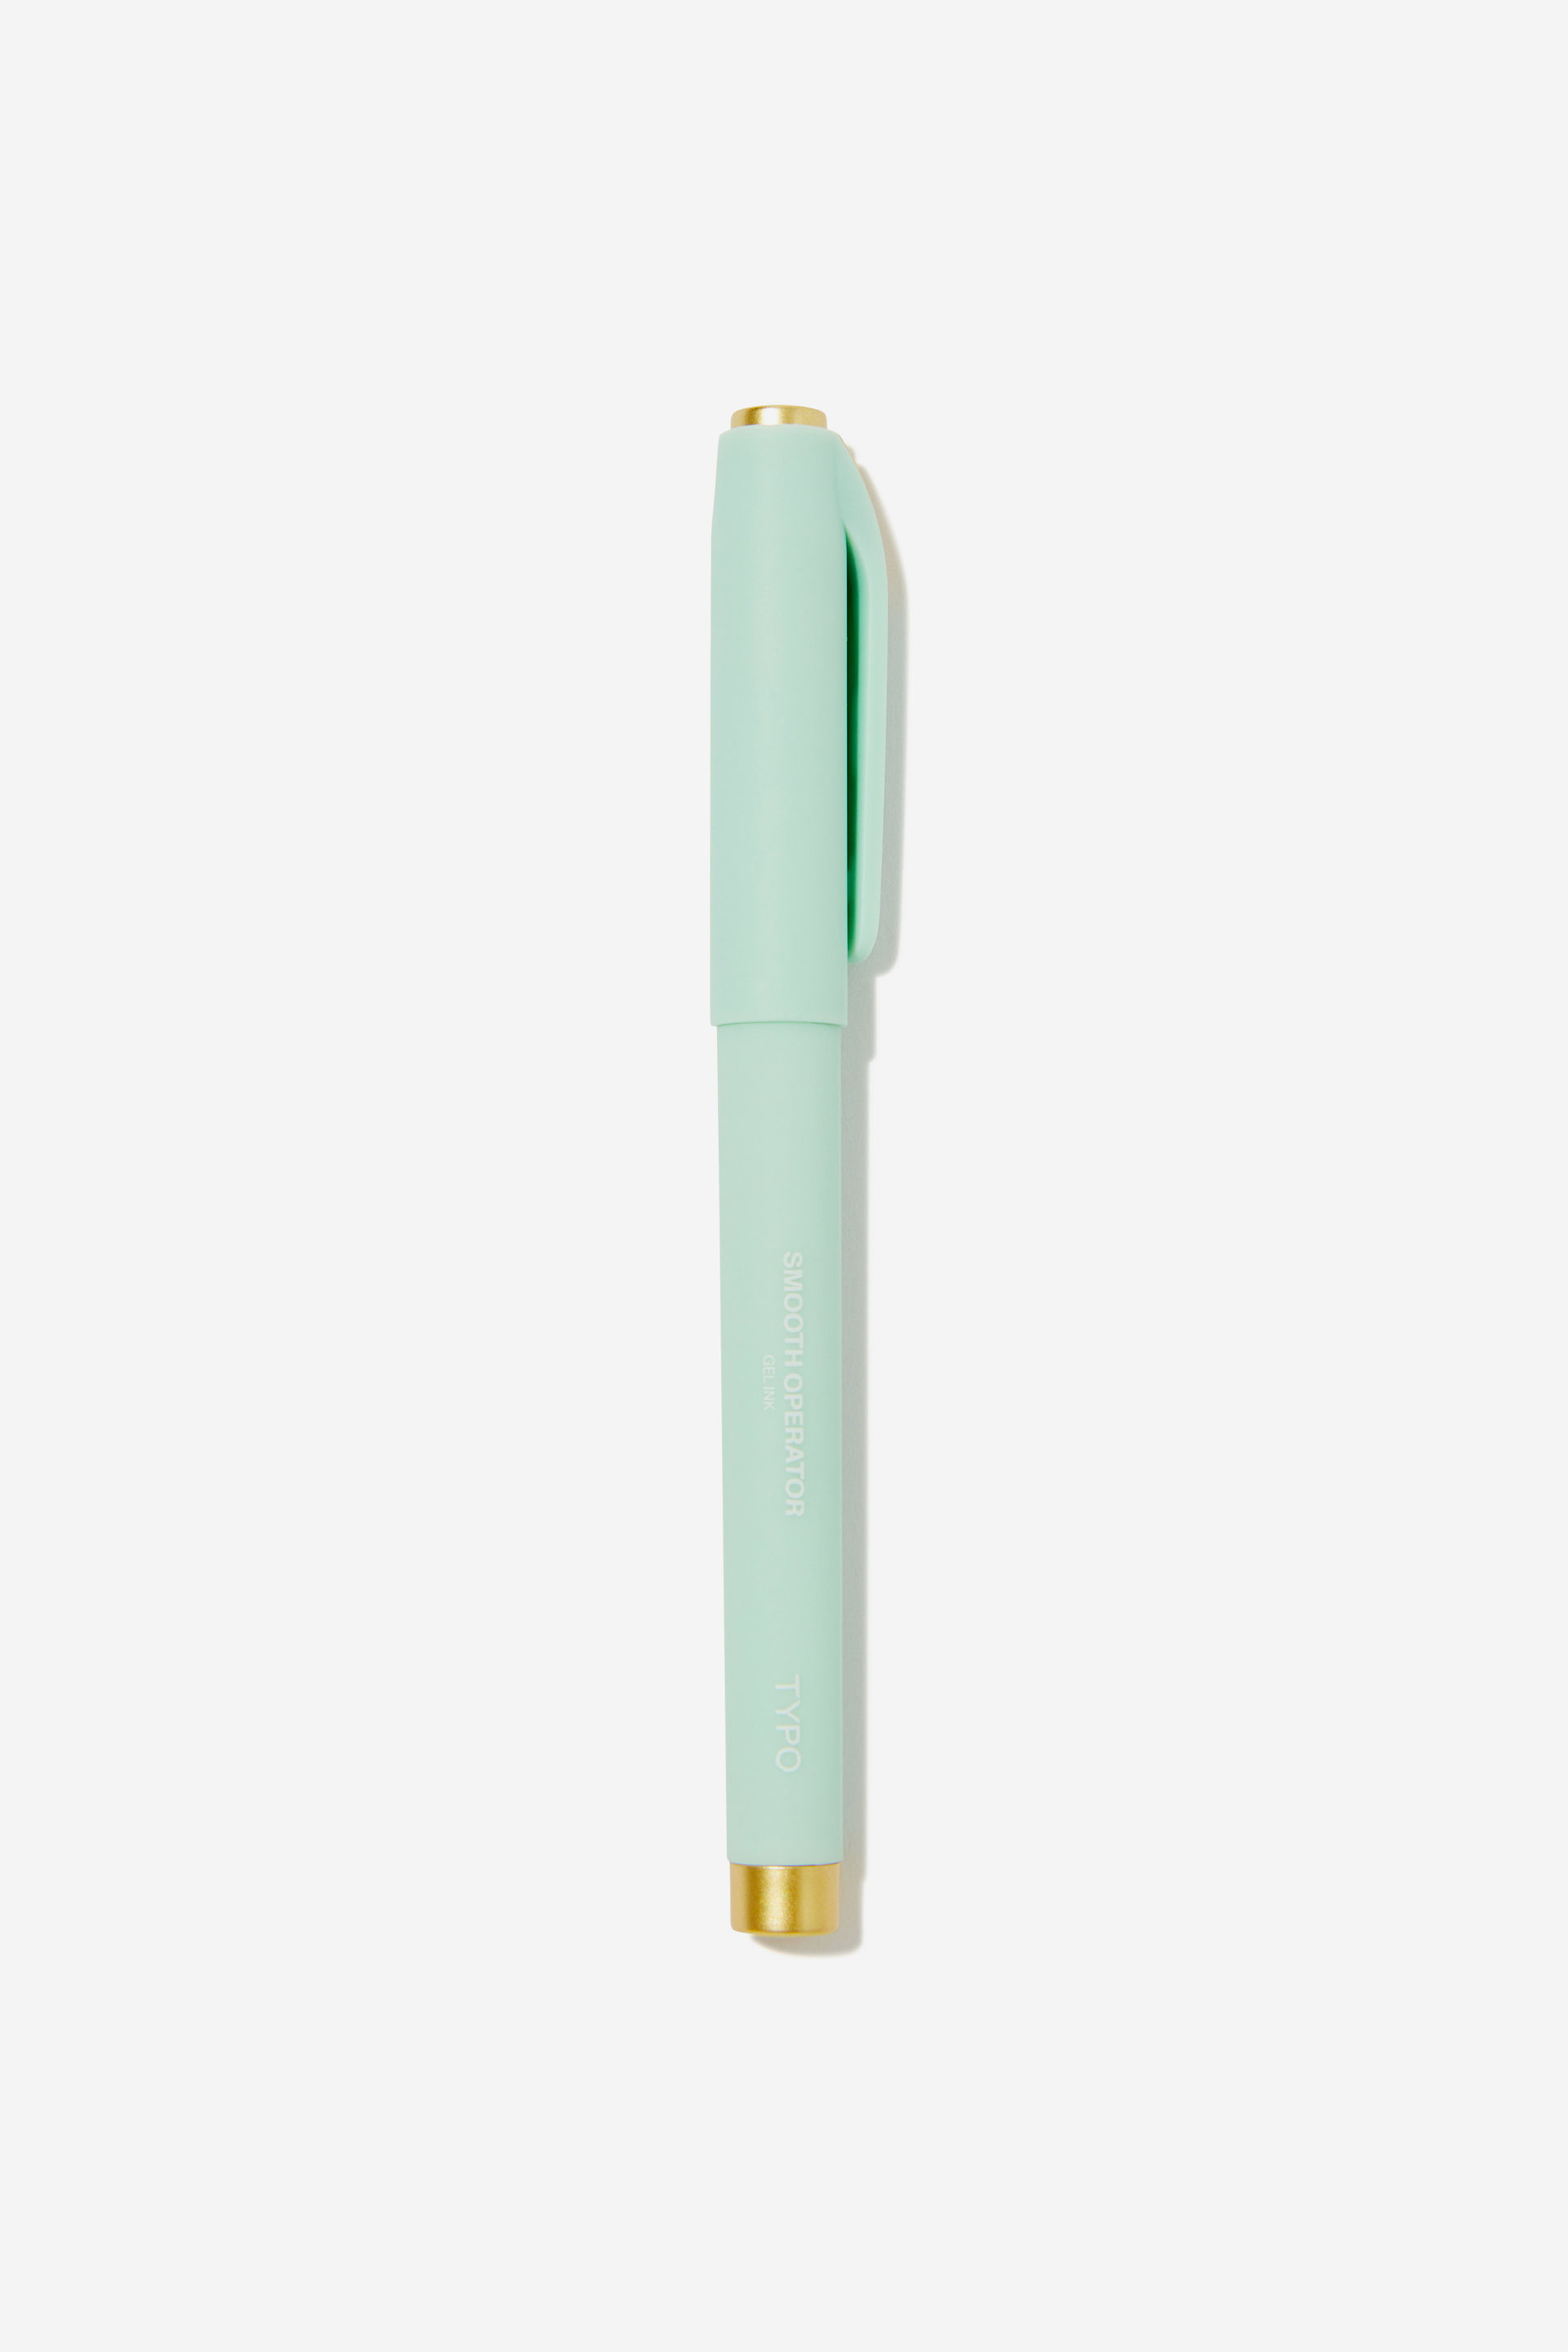 Typo - Smooth Operator Gel Pen - Smoke green